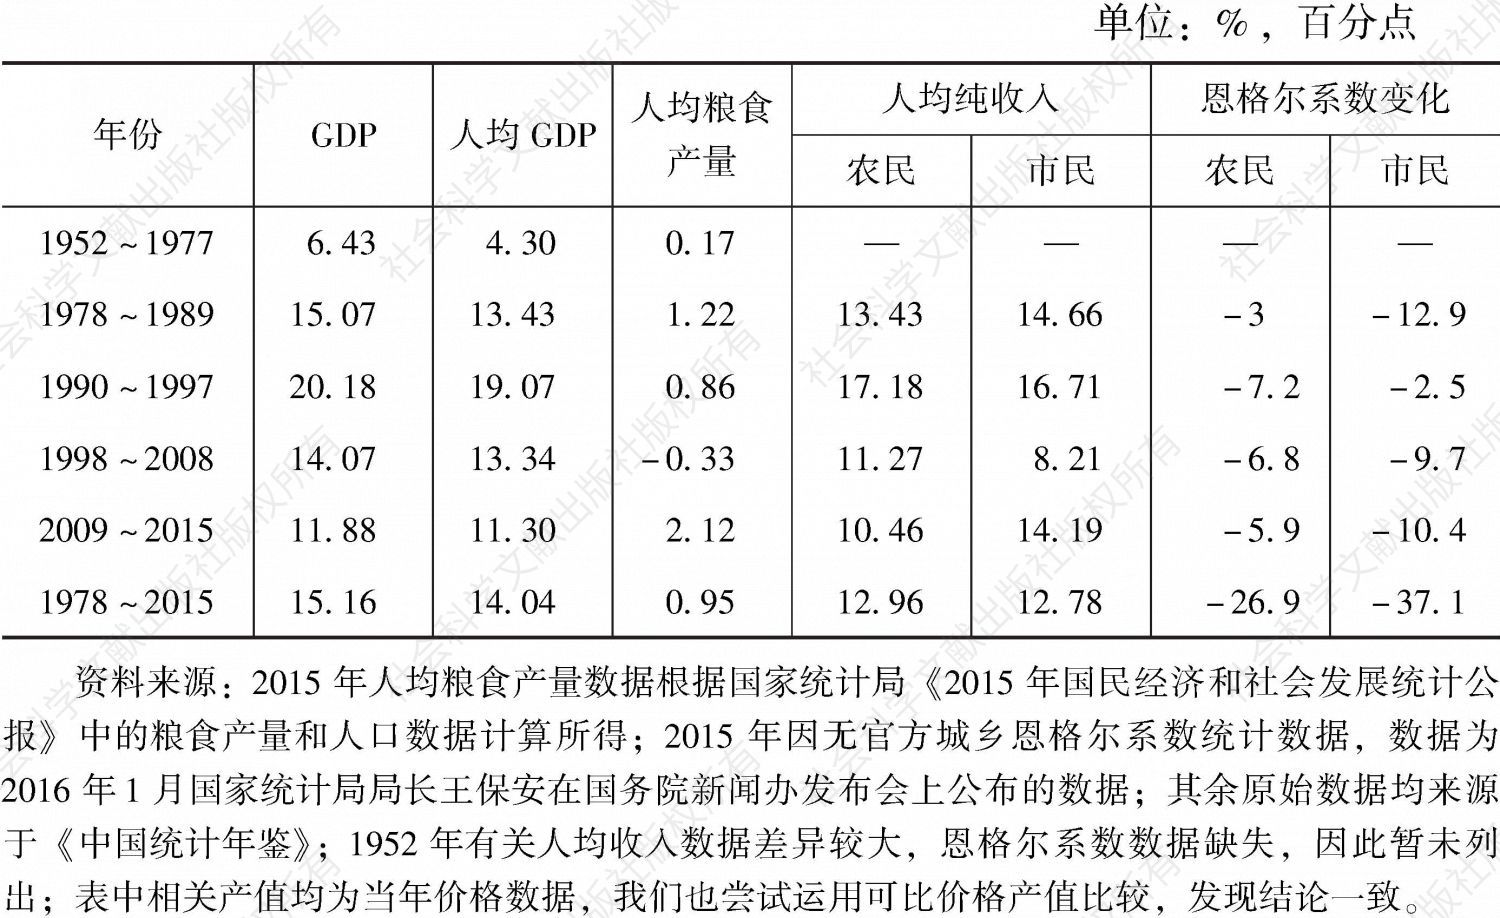 表1-1 改革开放前后主要经济指标年均增长率及恩格尔系数变化